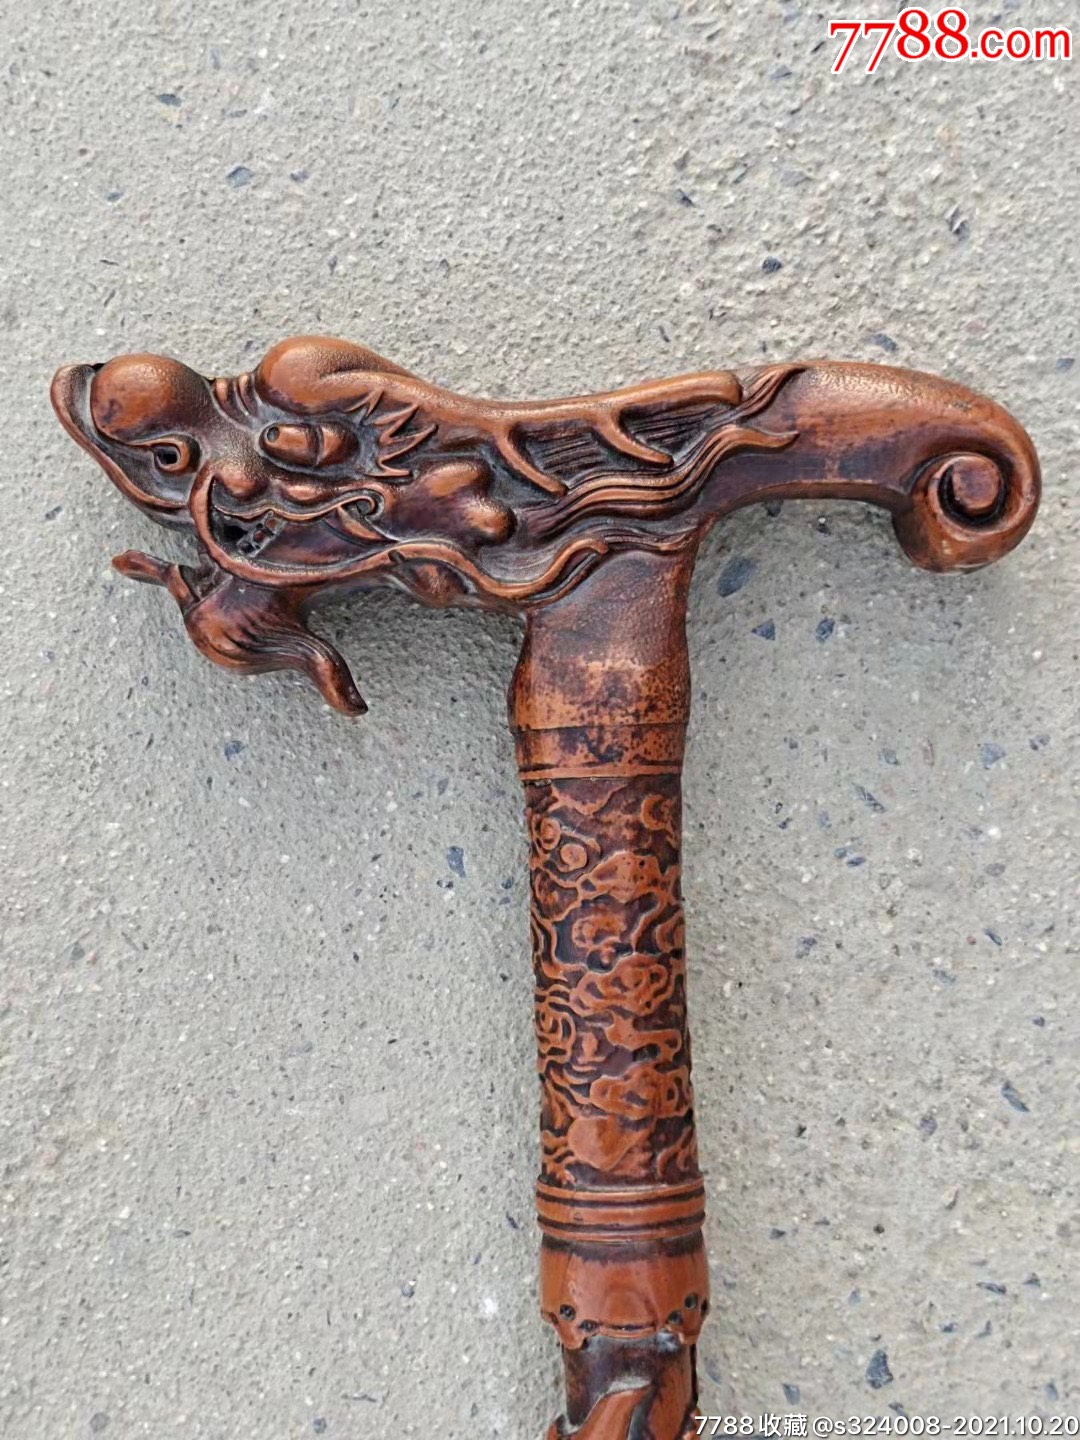 黄杨木龙头拐杖一个,雕刻福寿,尺寸如图,全品